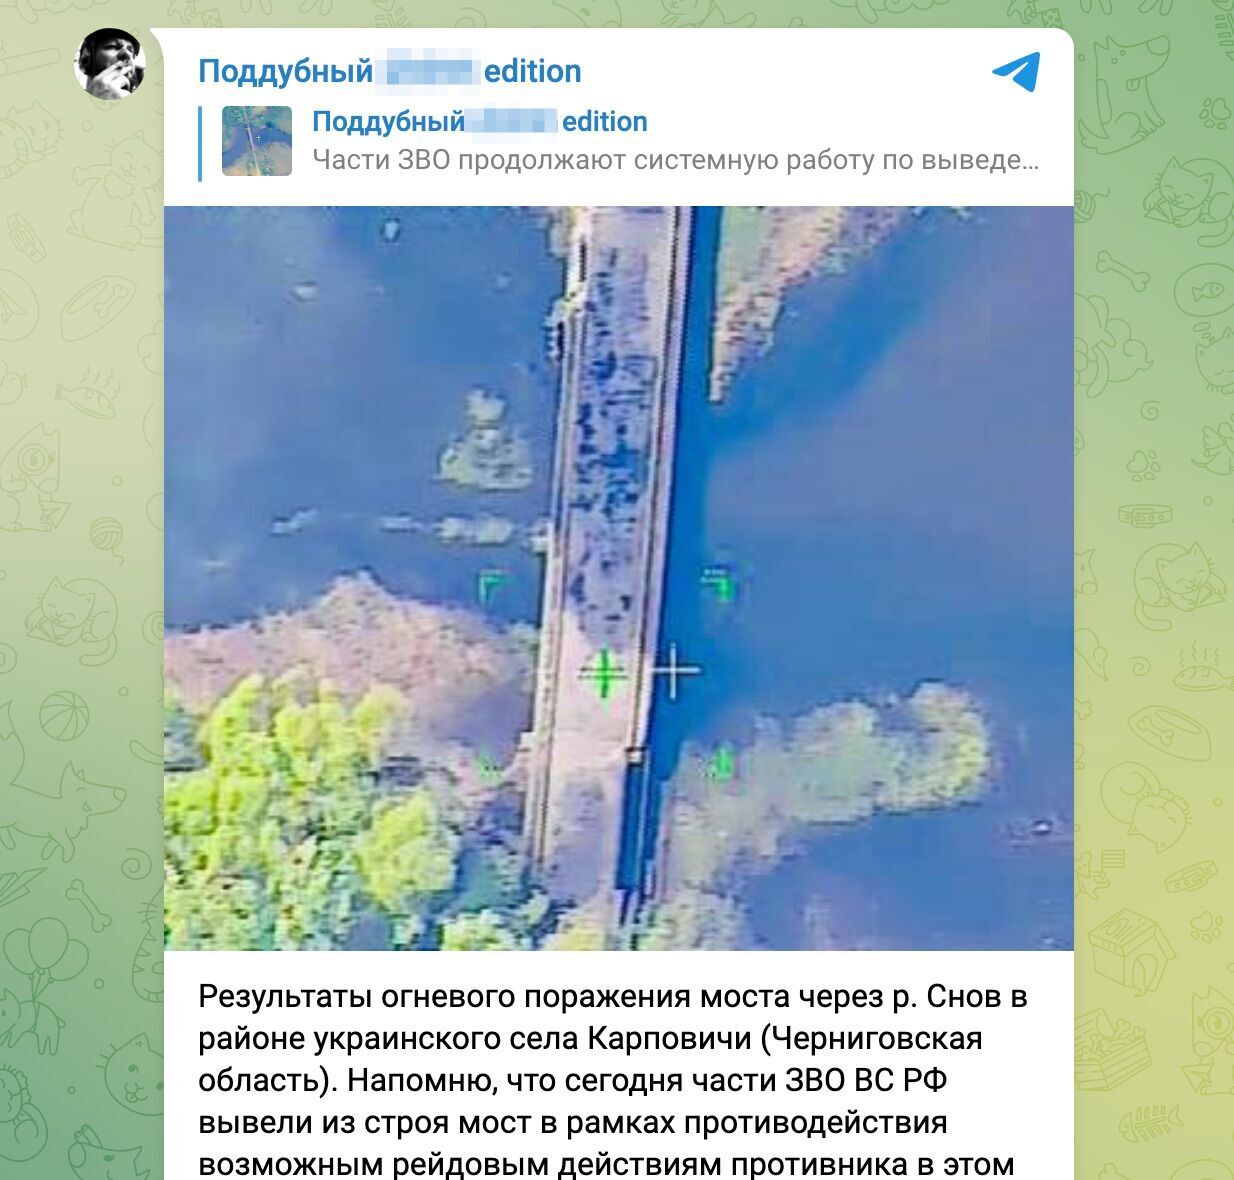 Російський ''воєнкор'' Піддубний оприлюднив фото, заявлене як результат ураження мосту на Чернігівщині